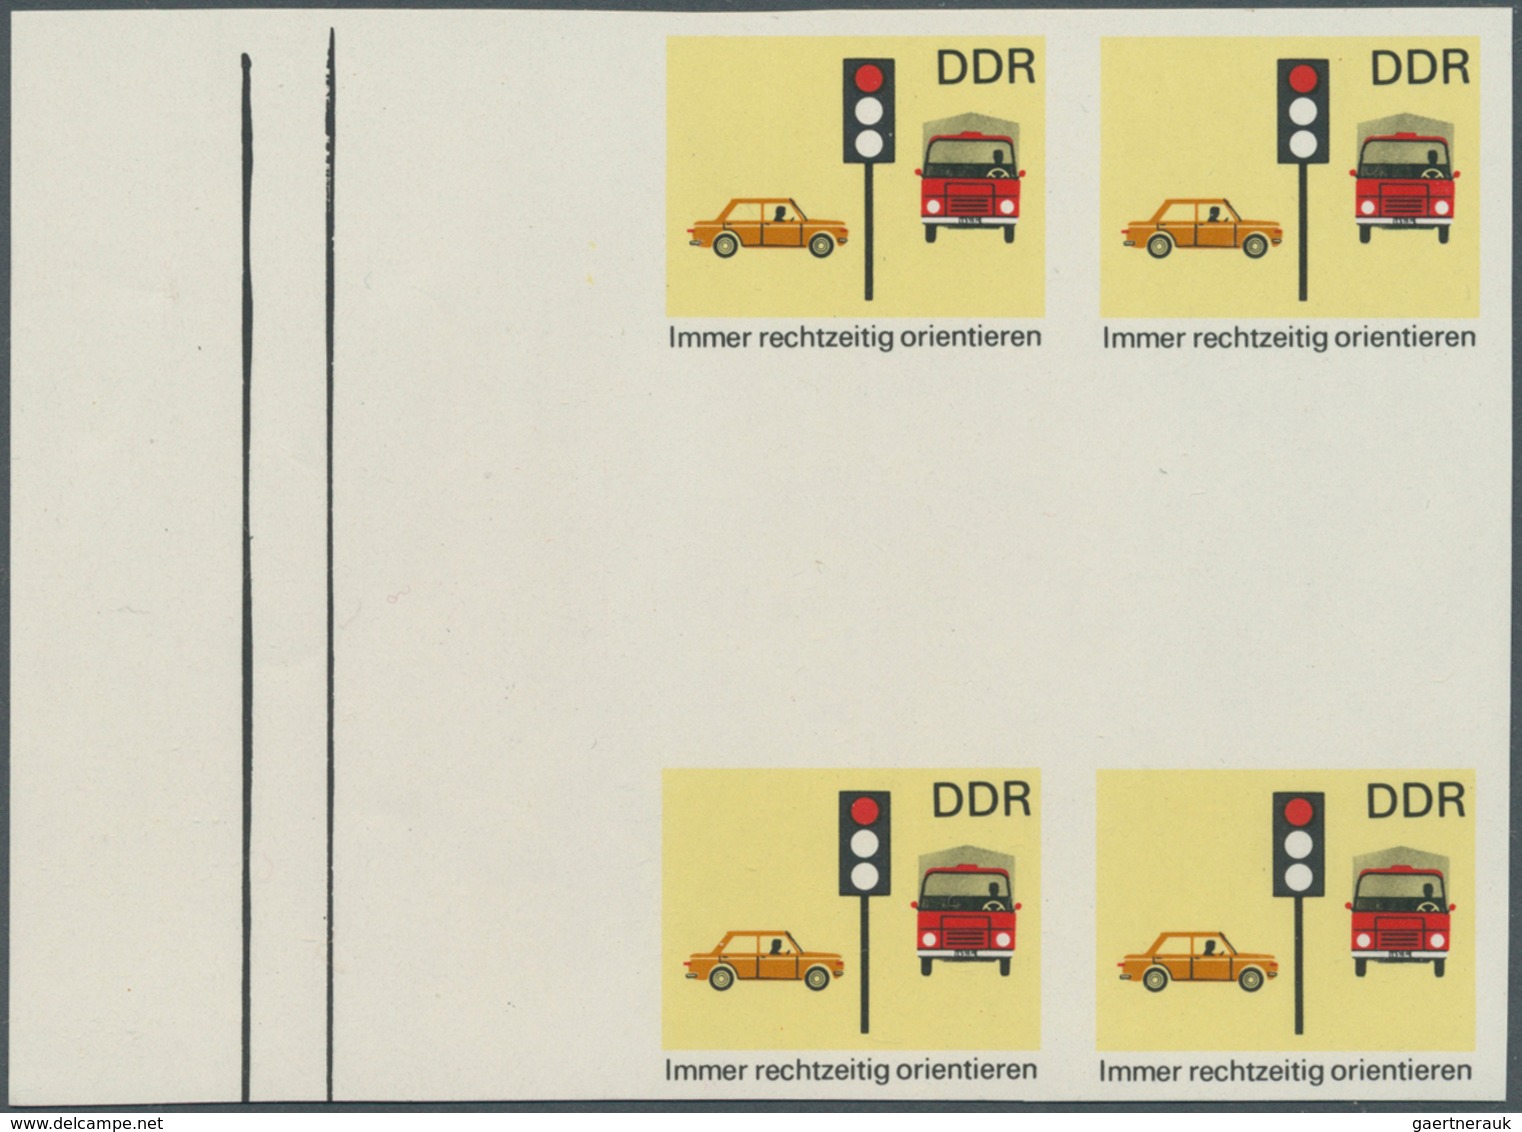 DDR: 1969, Sicherheit im Straßenverkehr 10 Pf. 'Immer rechtzeitig orientieren (Ampel)' in 6 verschie